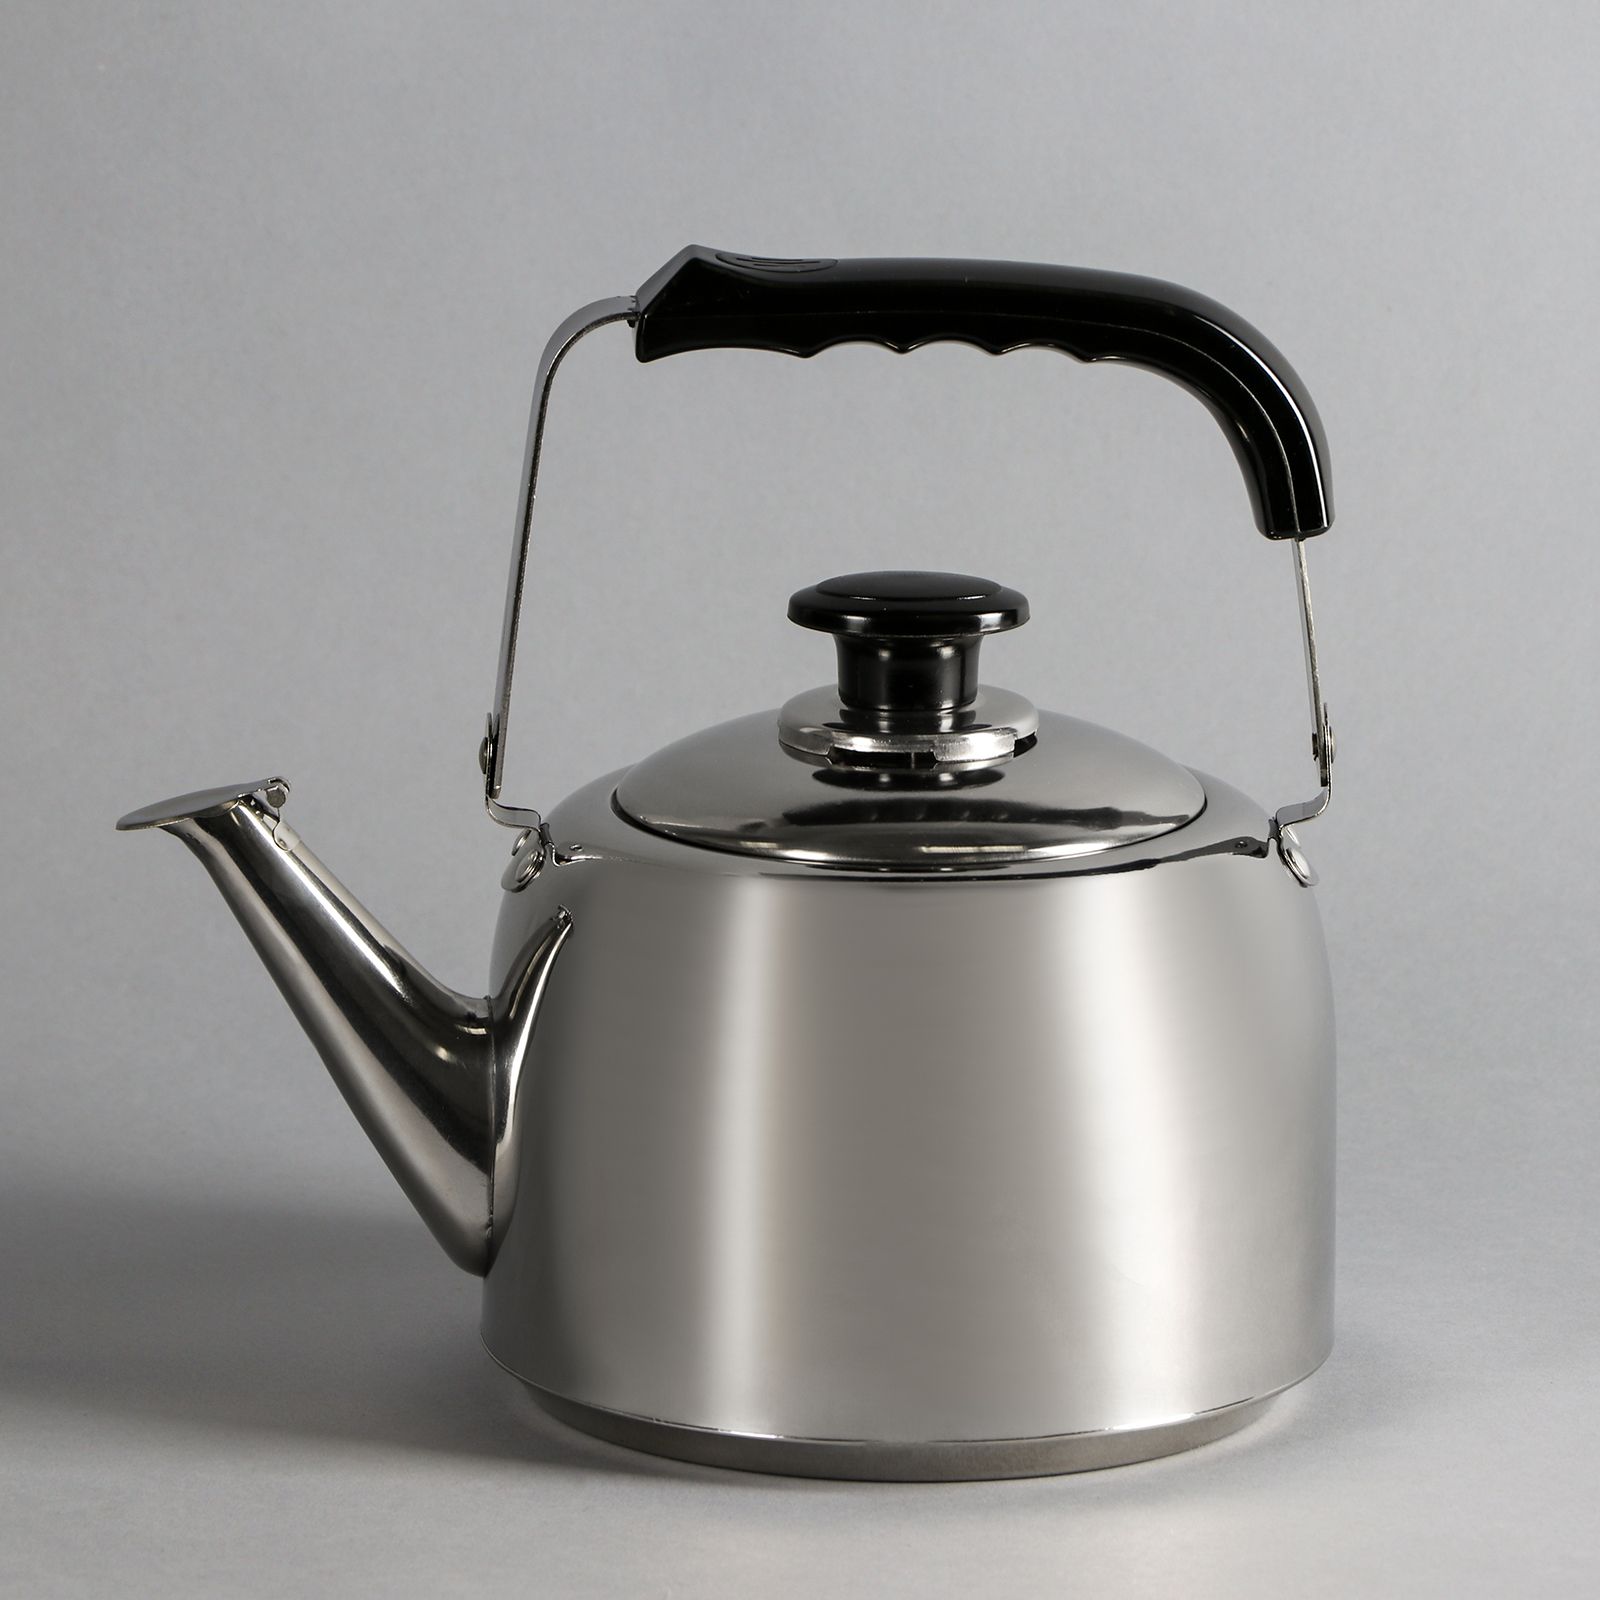 Лучший чайник из нержавеющей стали. Чайник Mercury MC-6741/6743. Astell чайник 5 л нержавеющая сталь. Чайник 4 л 2893746. Astell чайник для плиты 1,5 л.